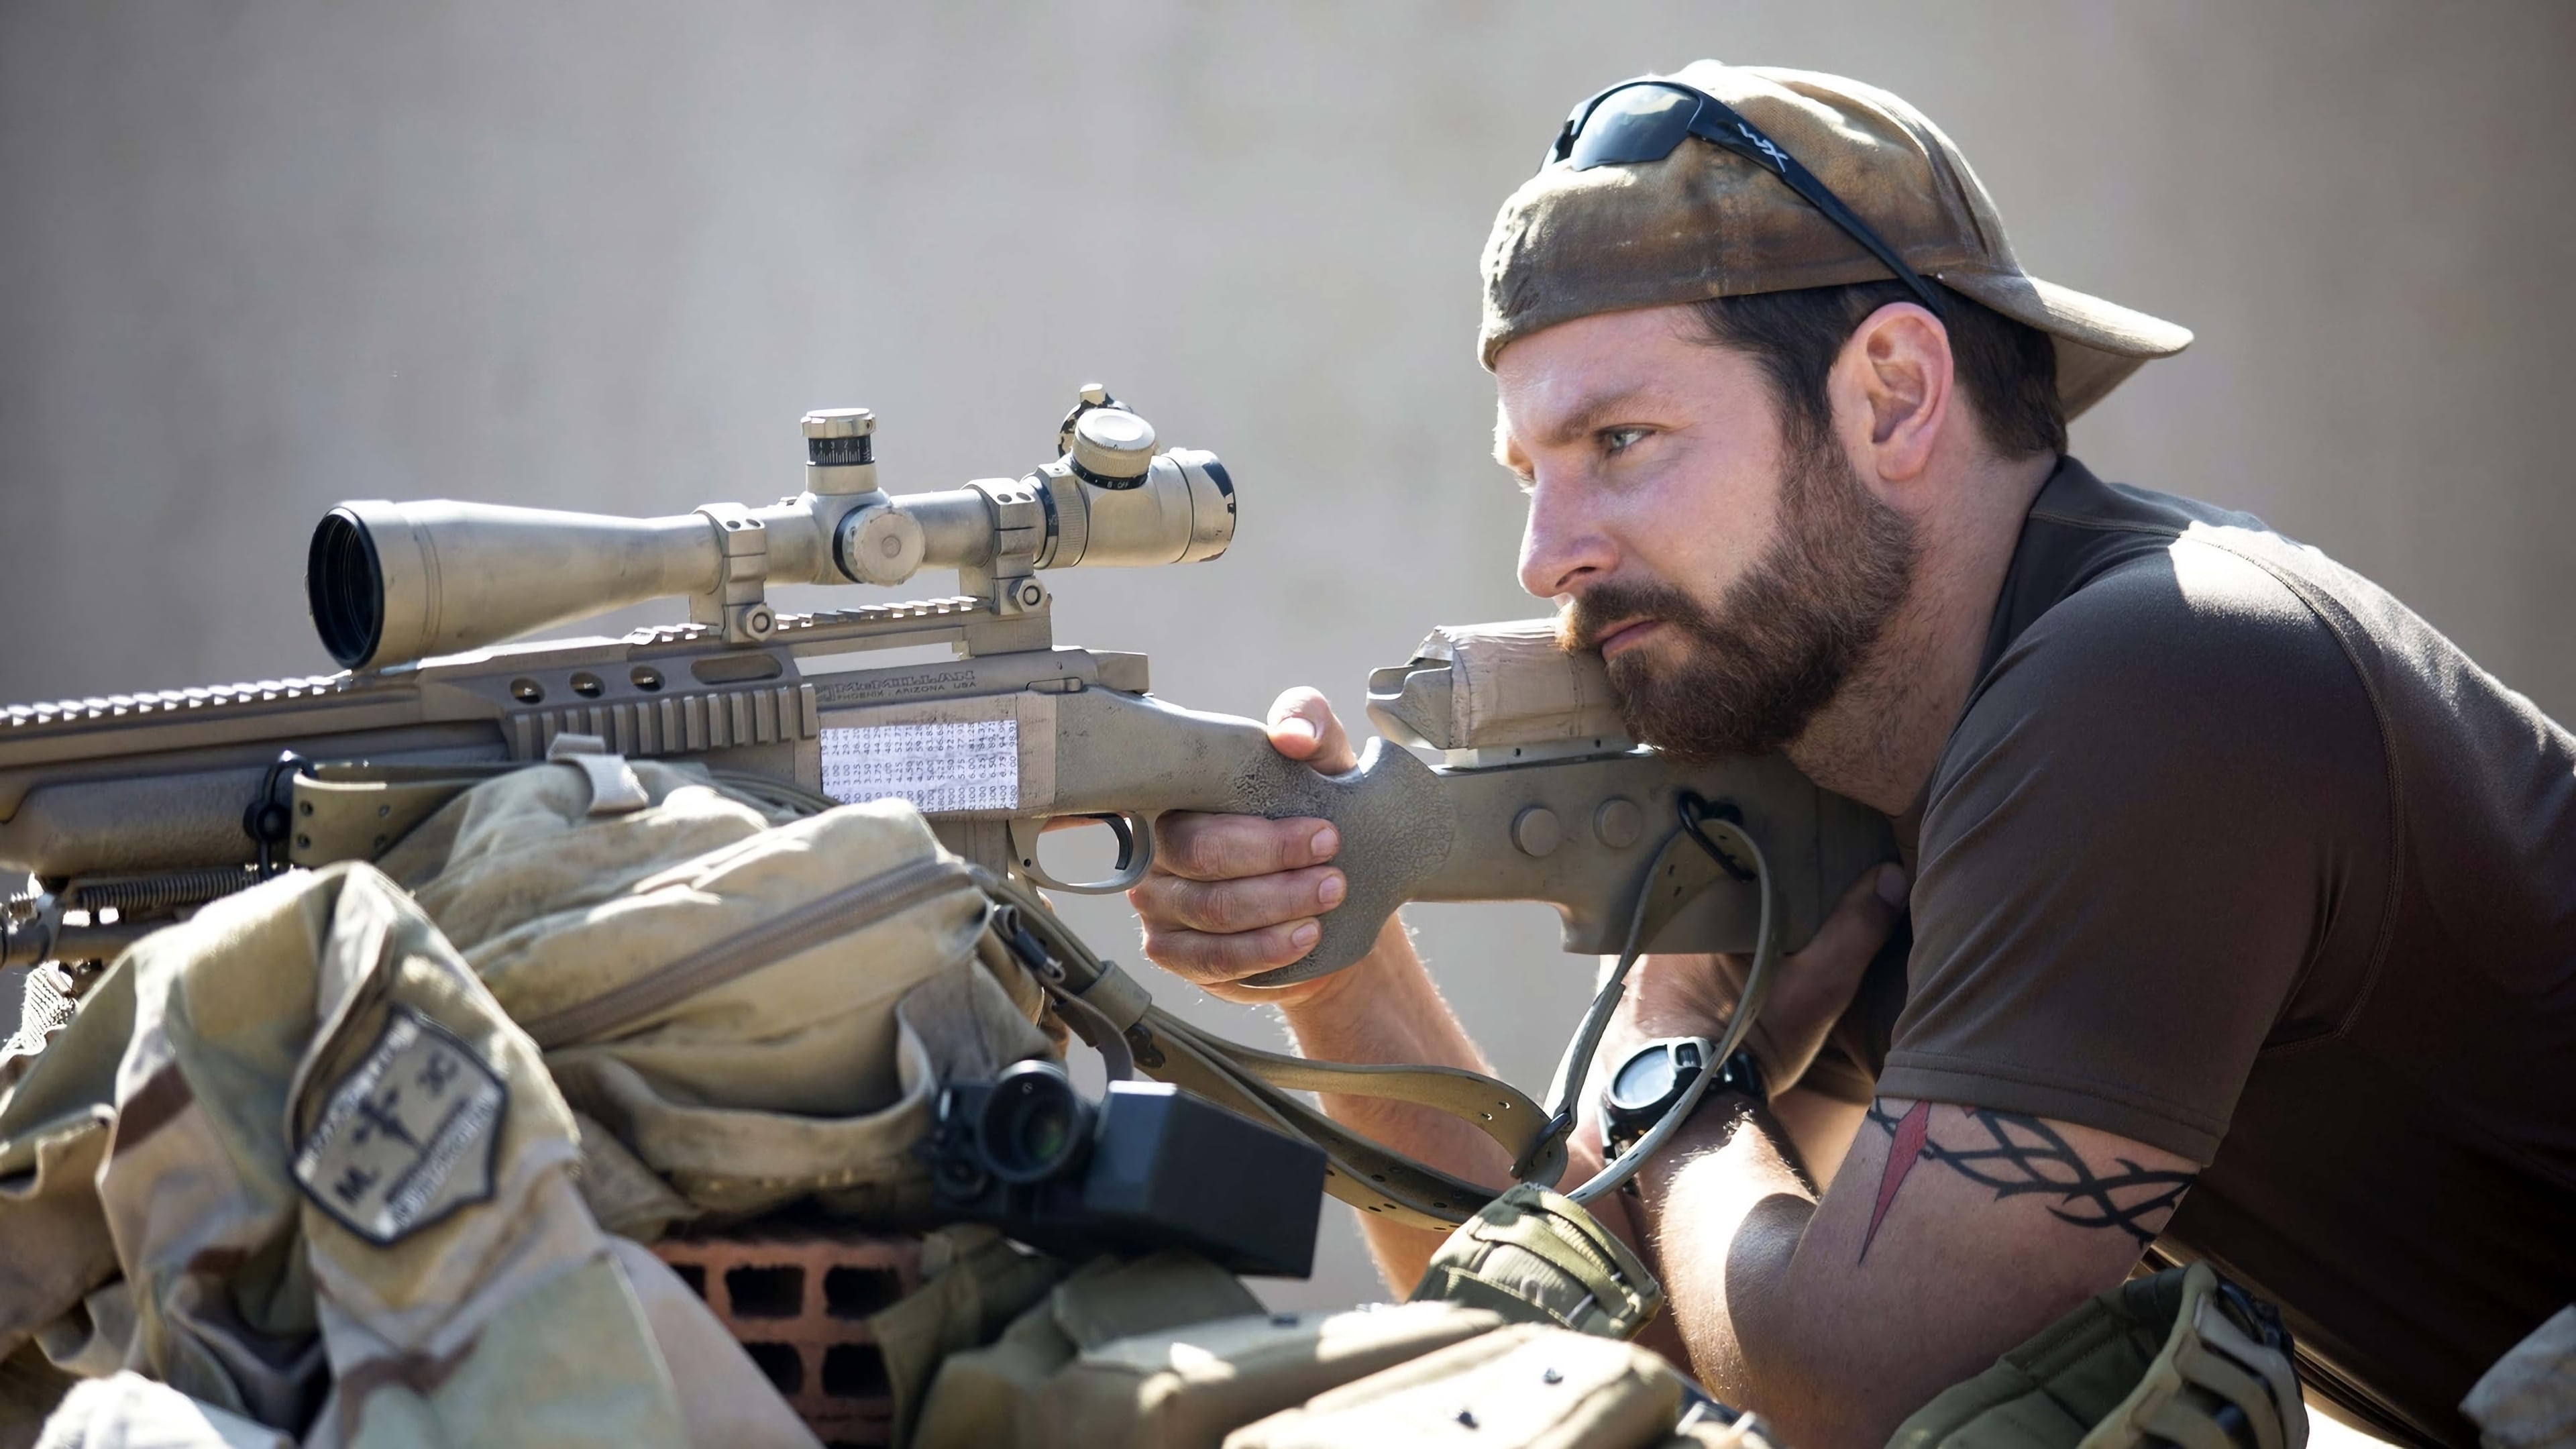 Lính bắn tỉa mỹ - American sniper